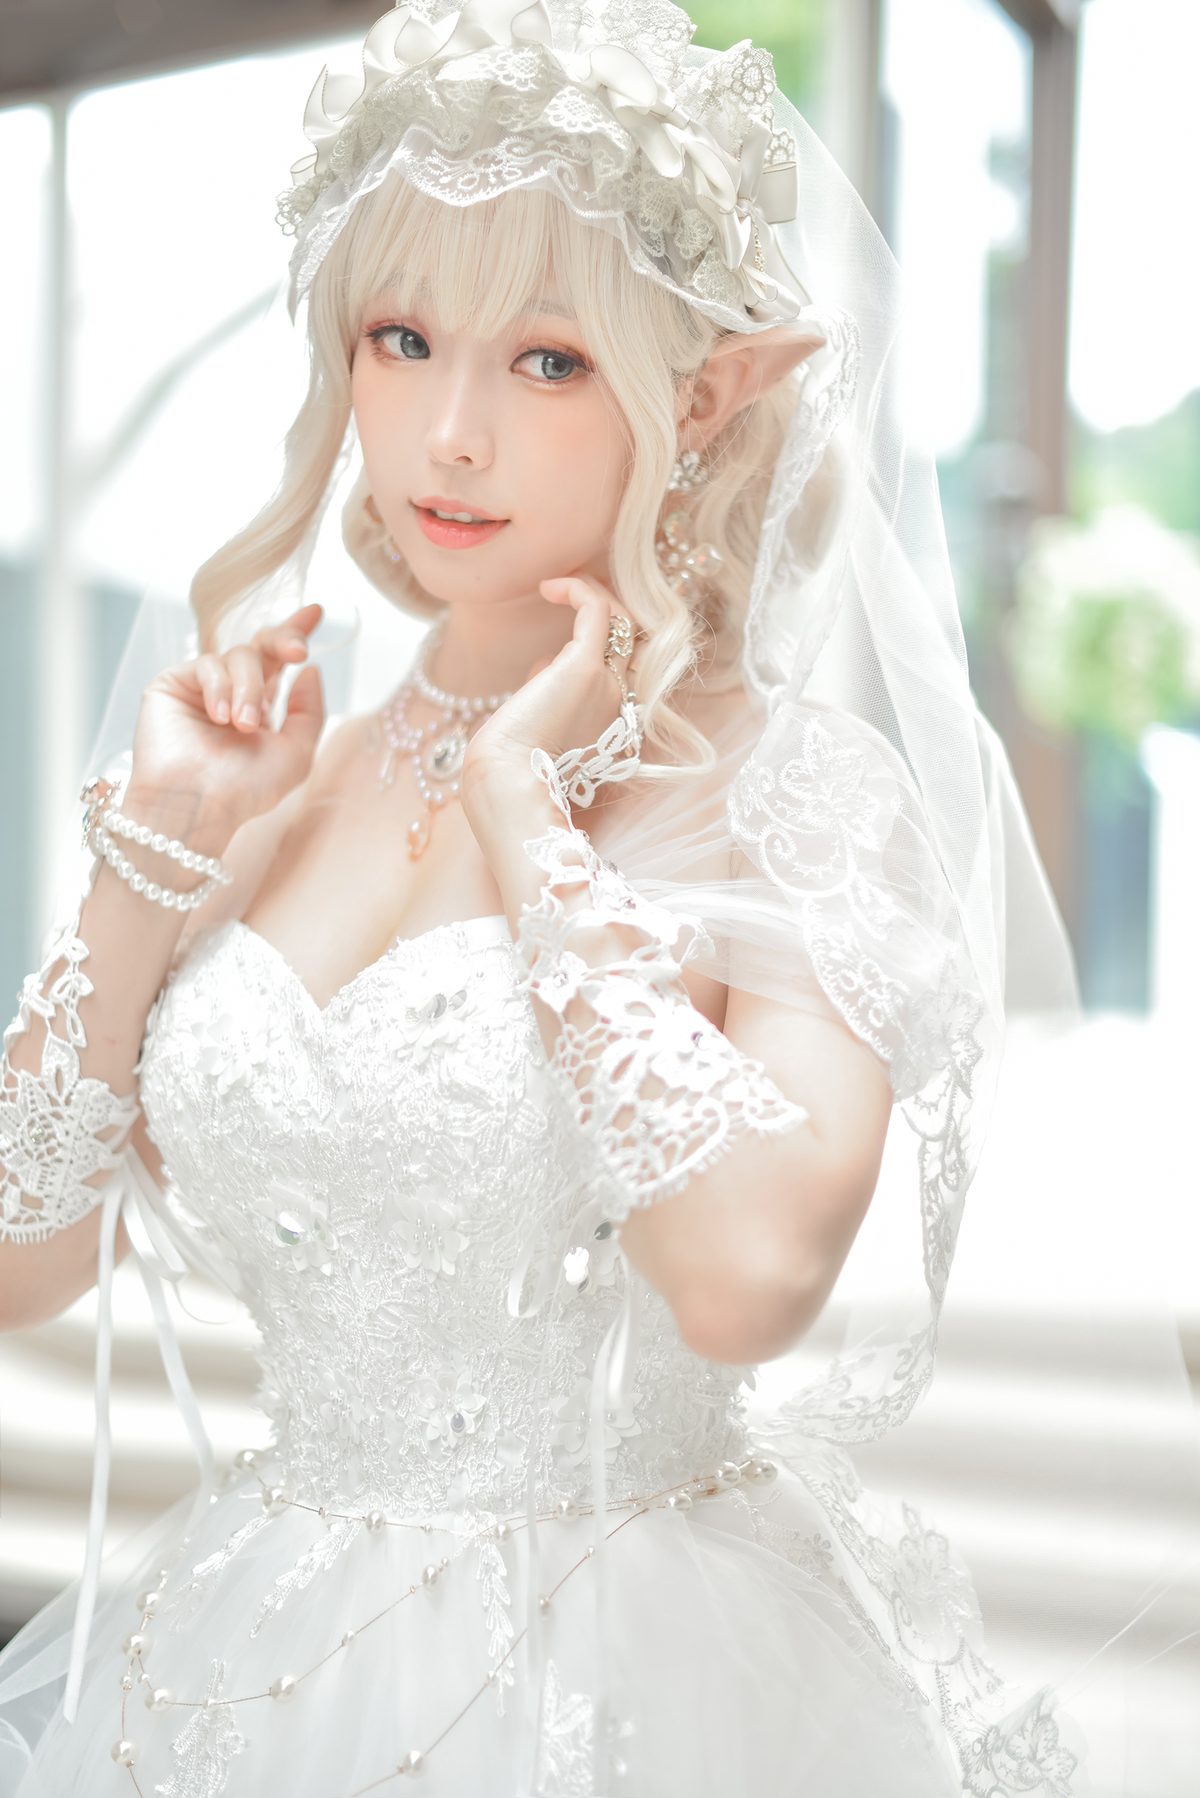 Coser@Ely_eee ElyEE子 Bride And Lingerie 0028 6589789297.jpg